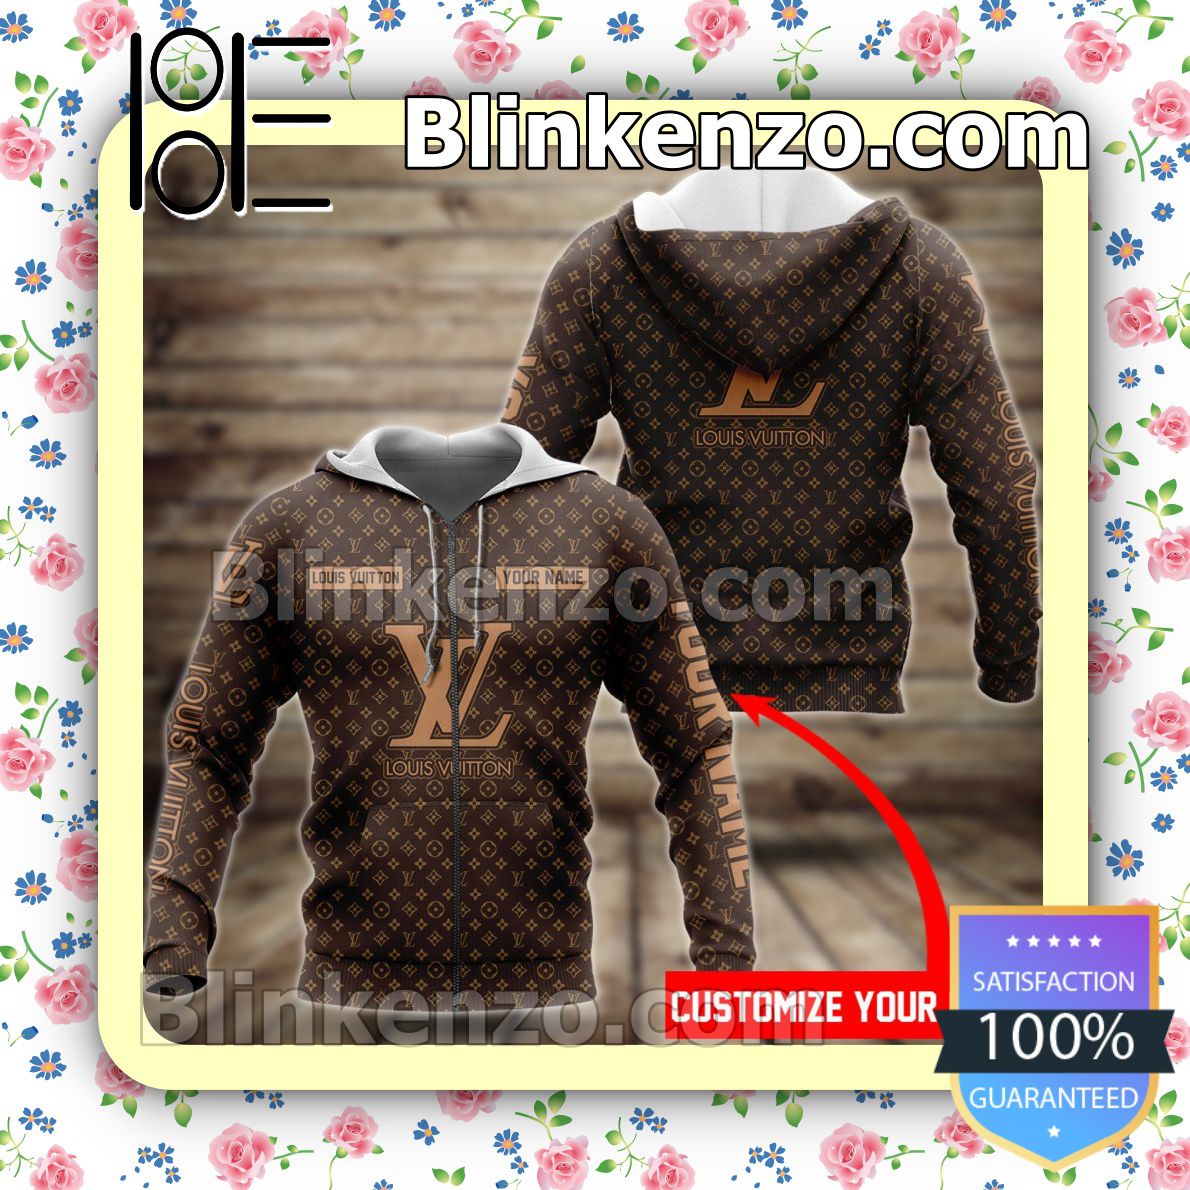 Perfect Personalized Louis Vuitton Dark Brown Monogram Full-Zip Hooded Fleece Sweatshirt